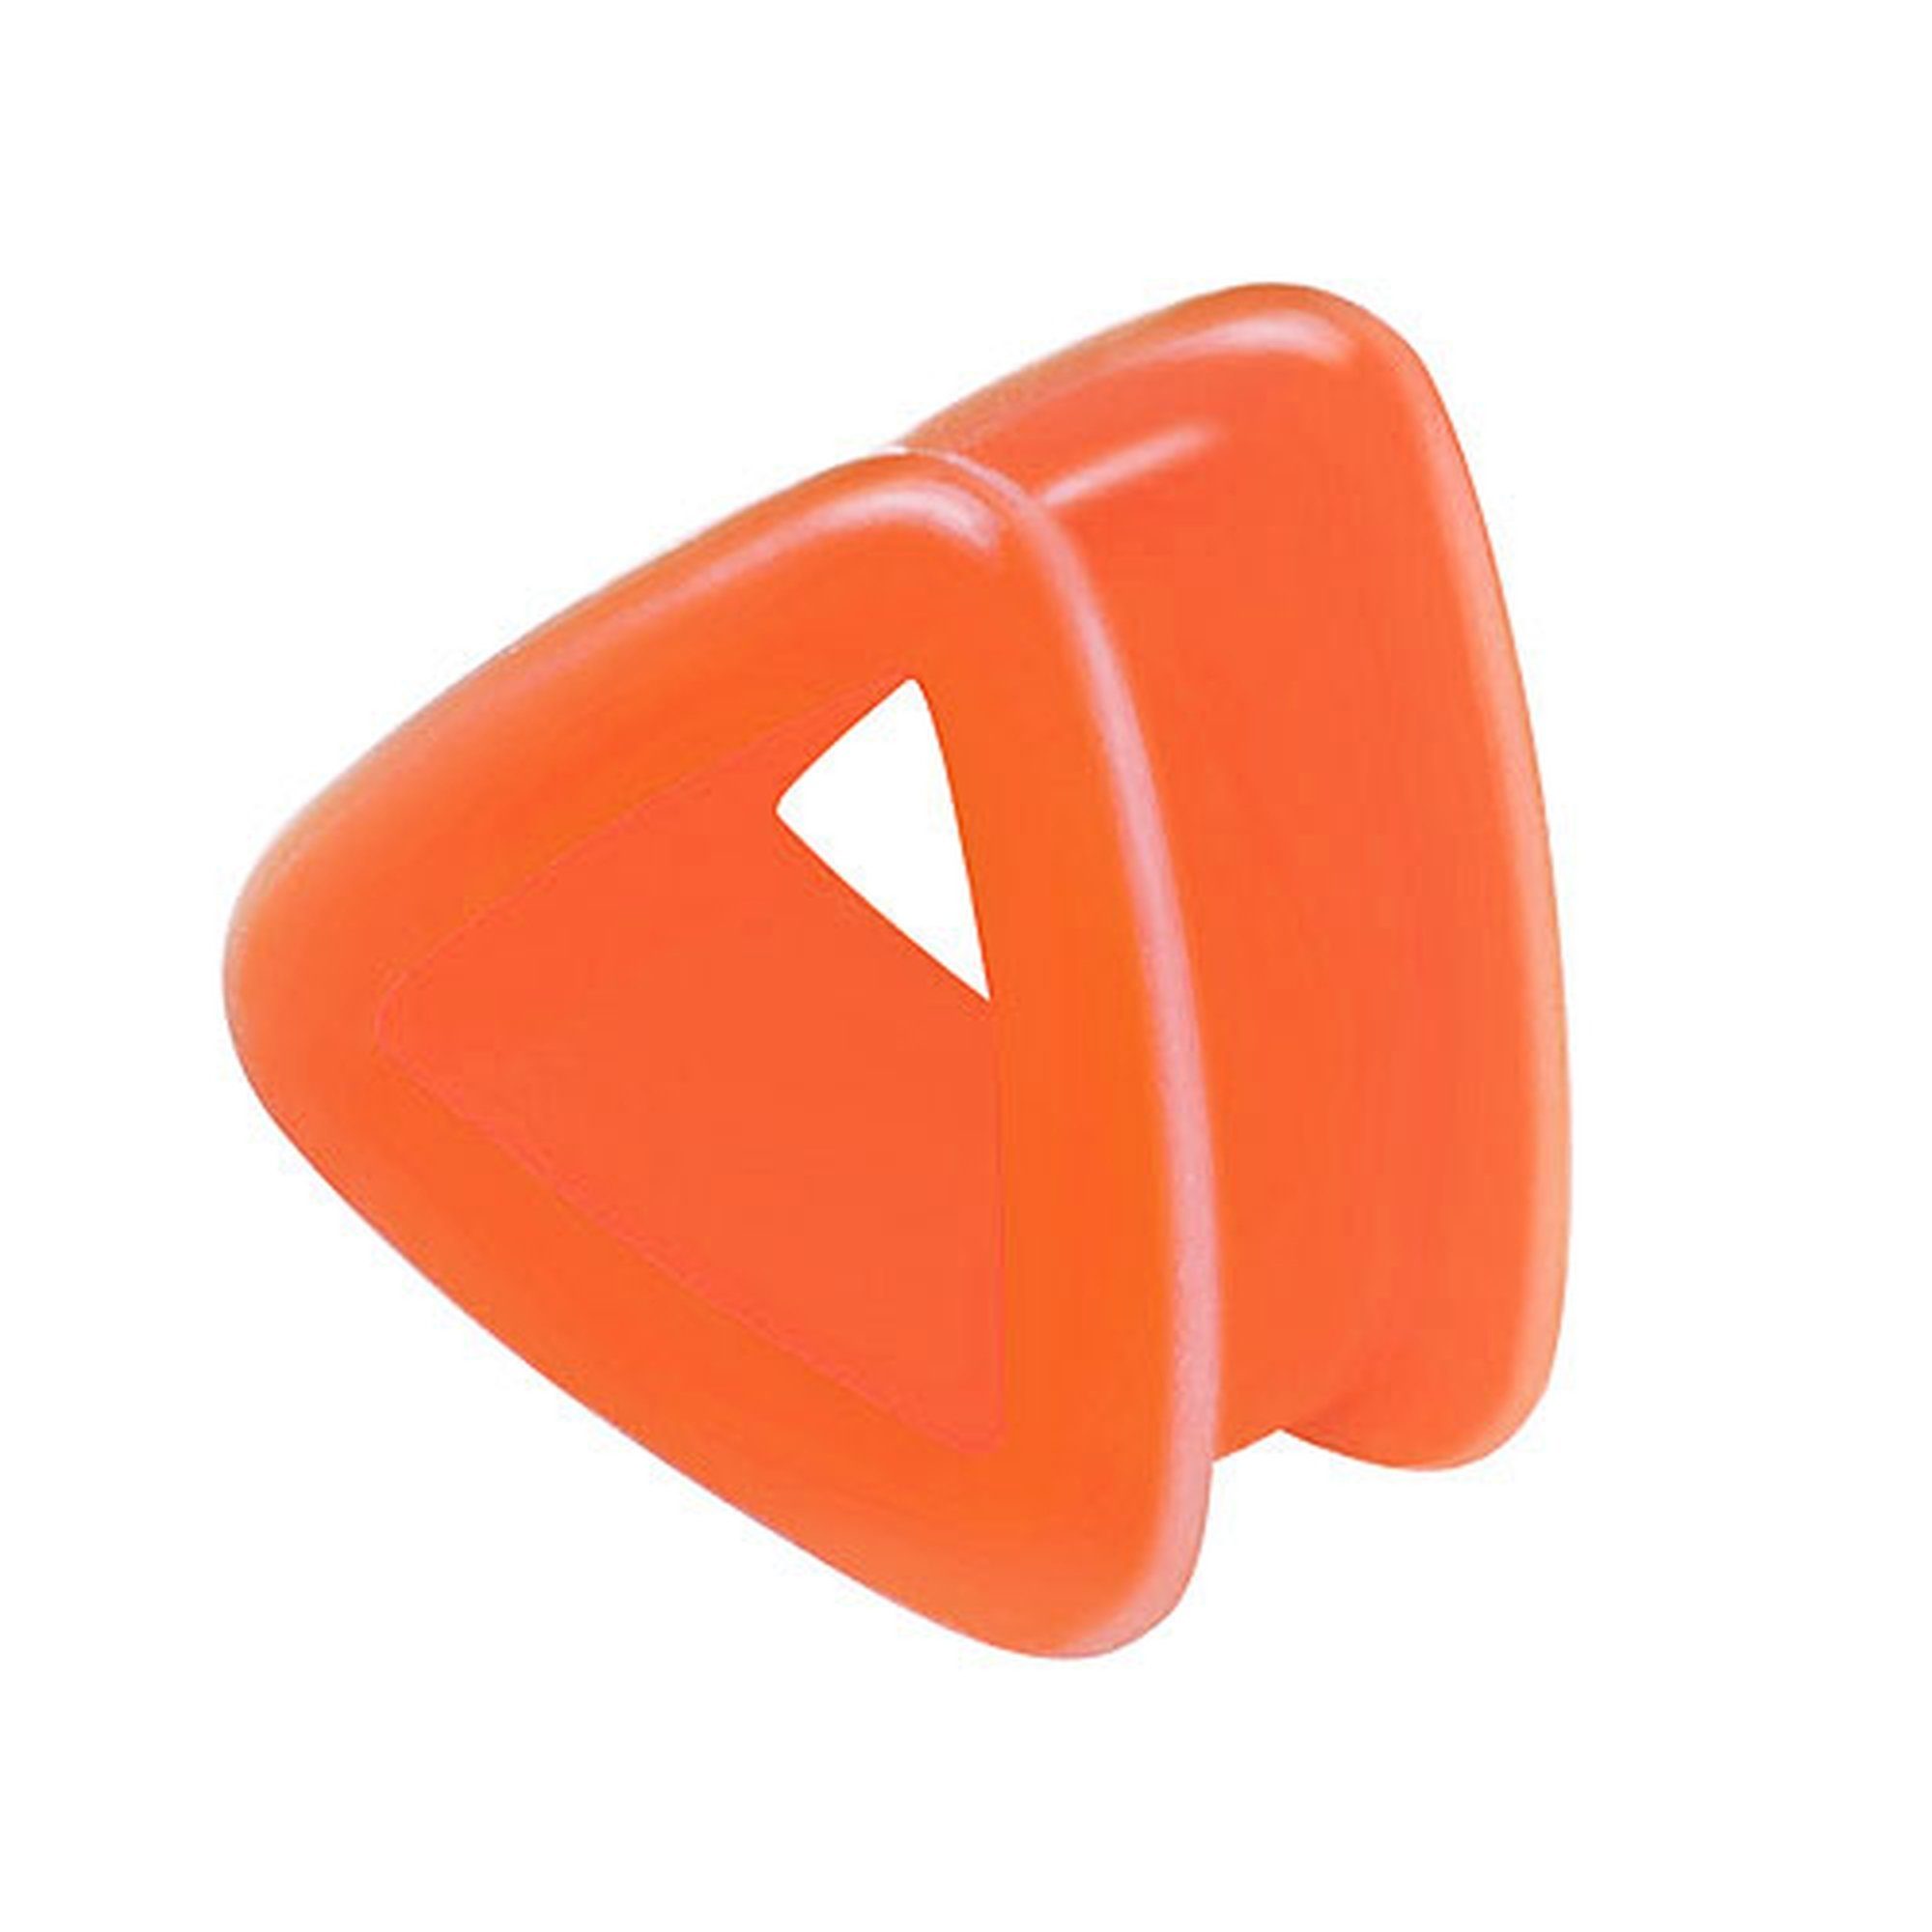 Plug Plug Piercing Flexibel Ohrpiercing Plug Silikon Piercing Dreieck, Ohr Flexibel Tunnel Bunt Flesh Taffstyle Orange Dreieck